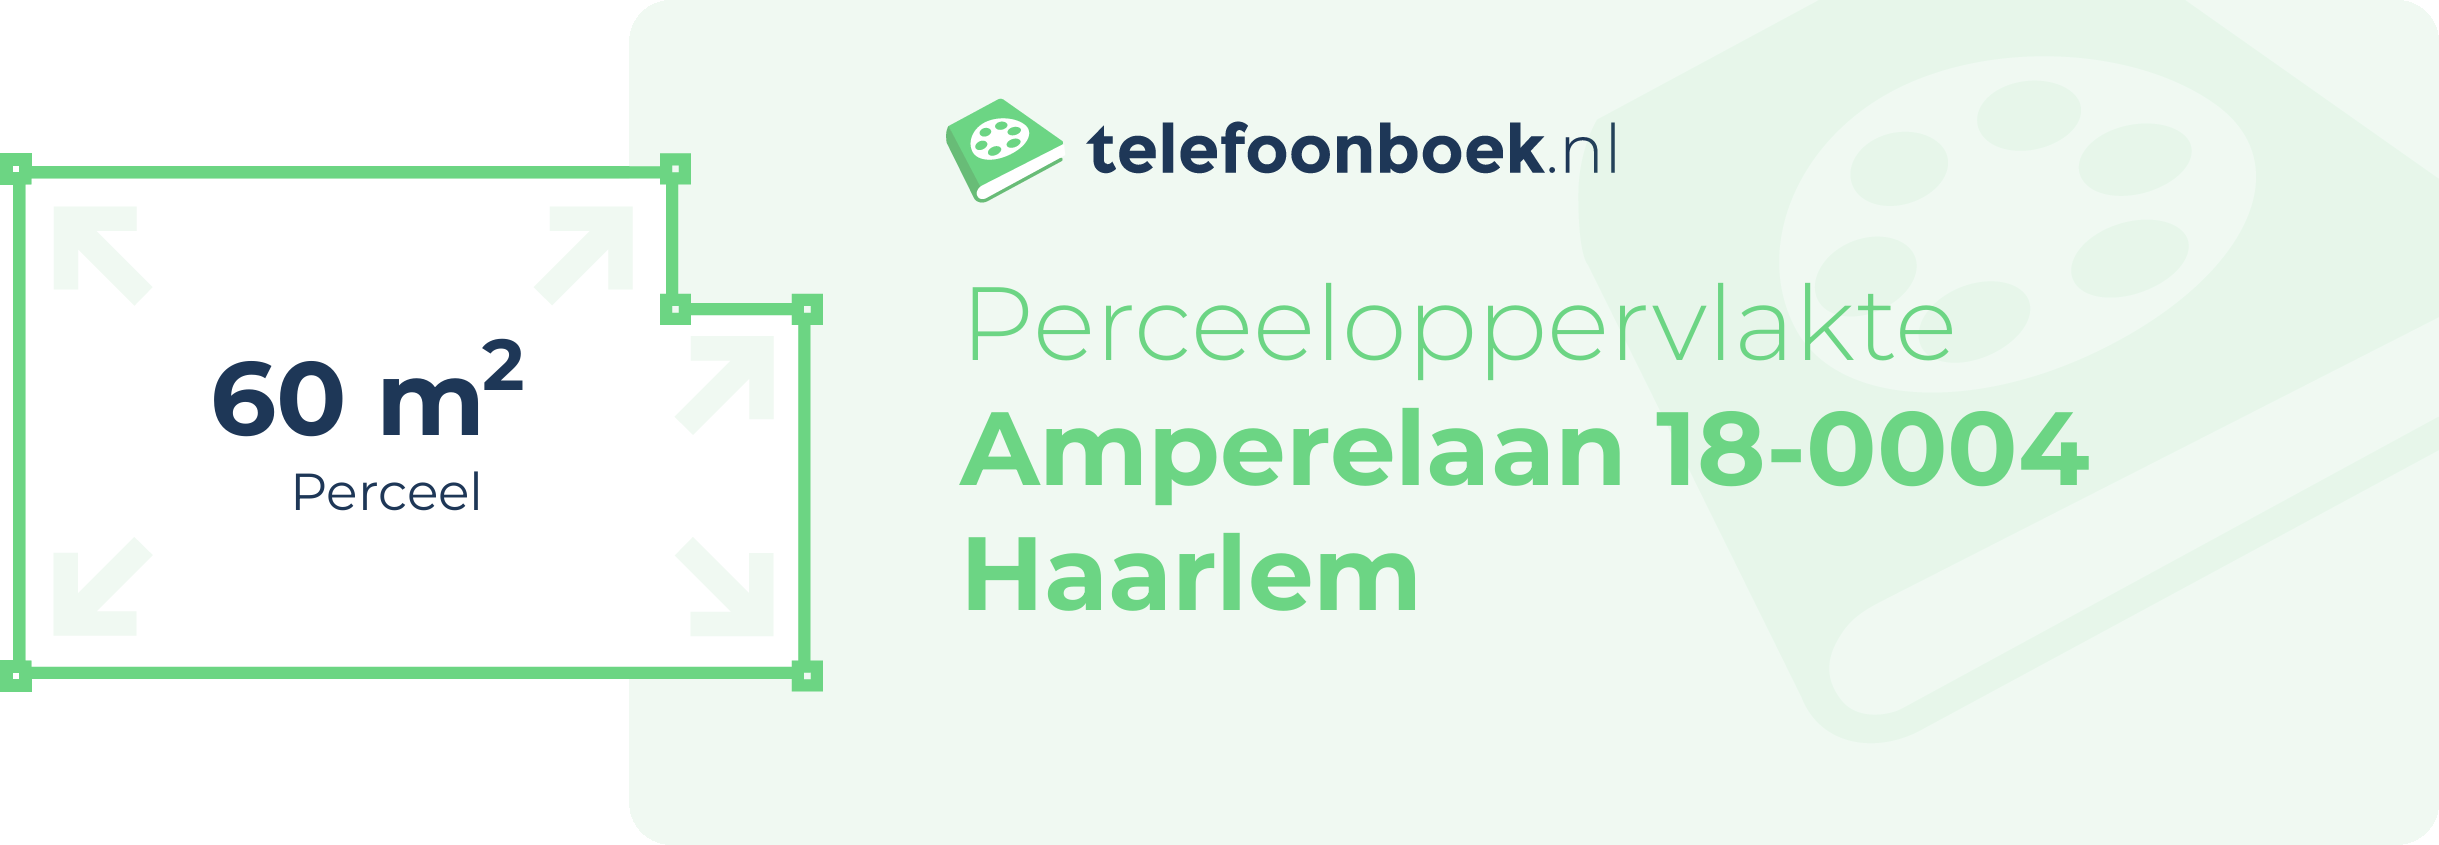 Perceeloppervlakte Amperelaan 18-0004 Haarlem